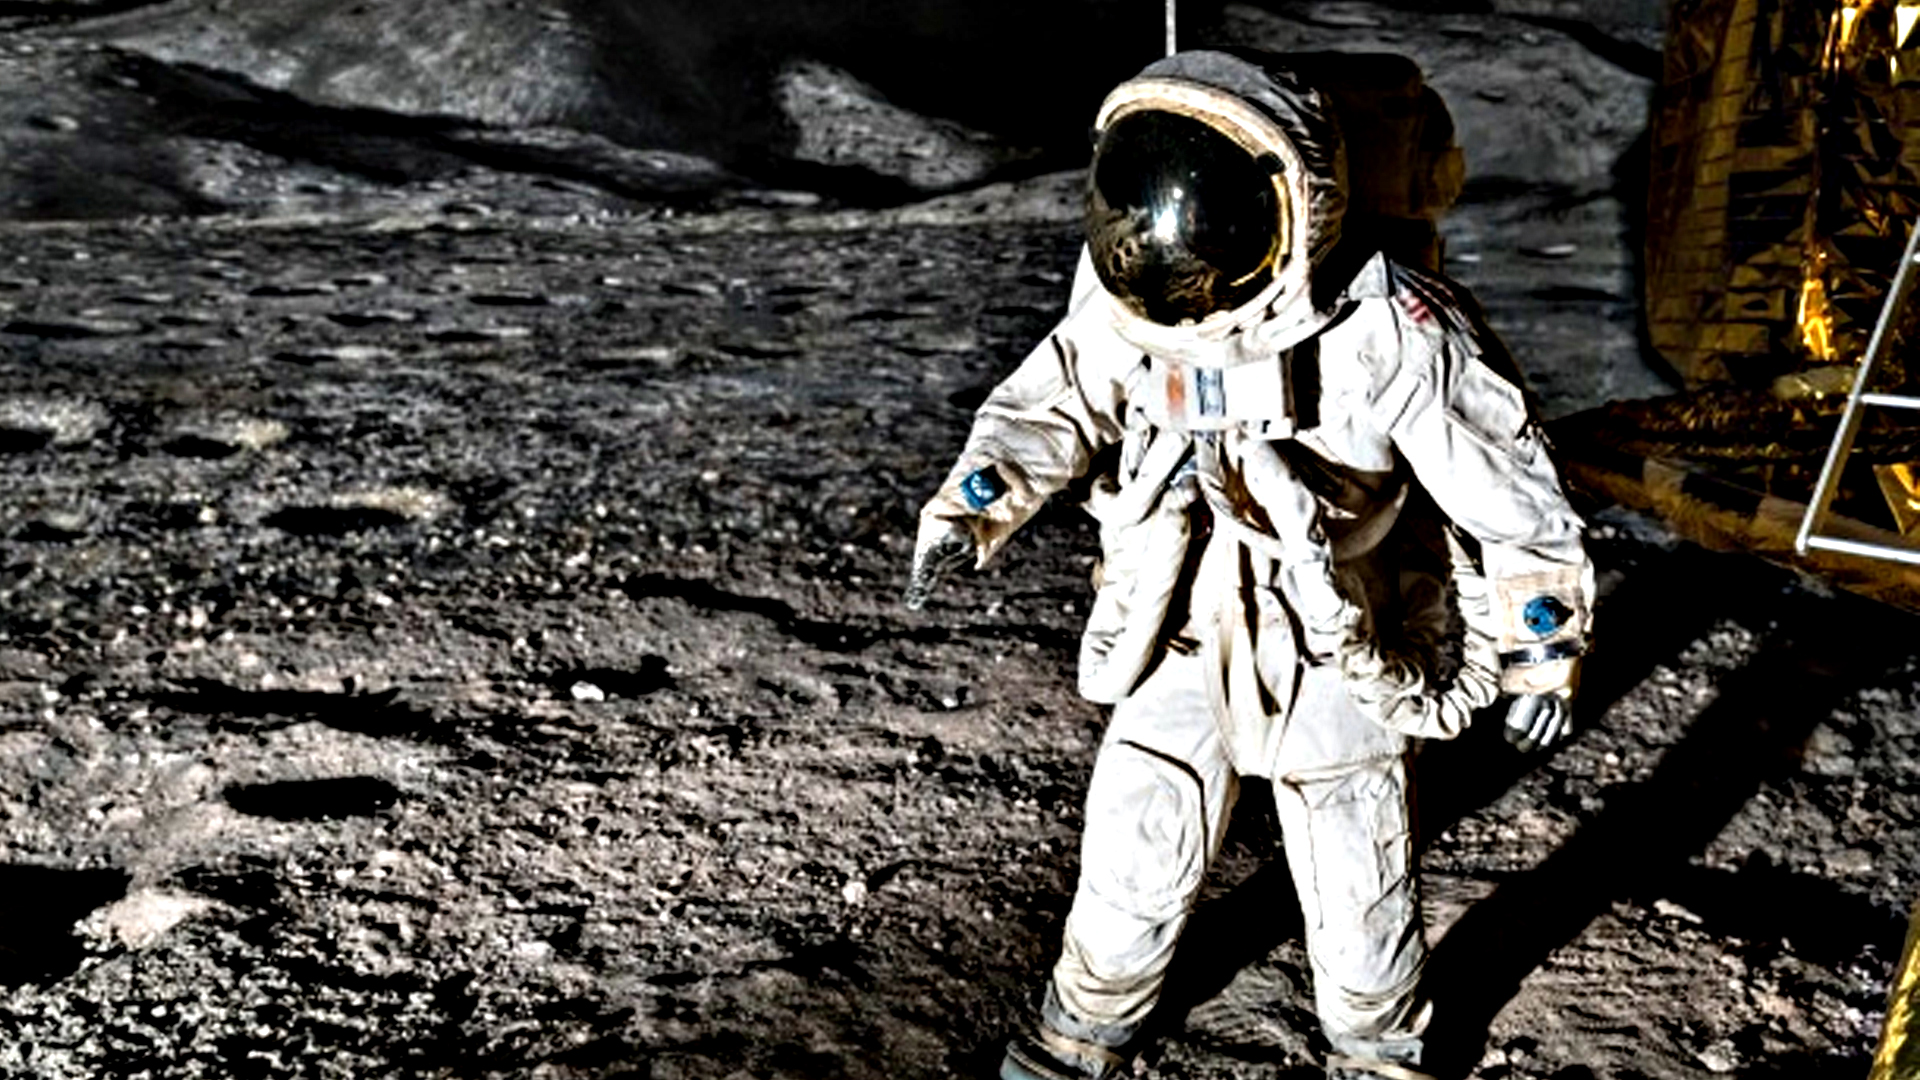 Космический полет на луну. Космонавт на Луне. Астронавты на Луне. Космонавт на Луне картинки. Картина космонавт на Луне.